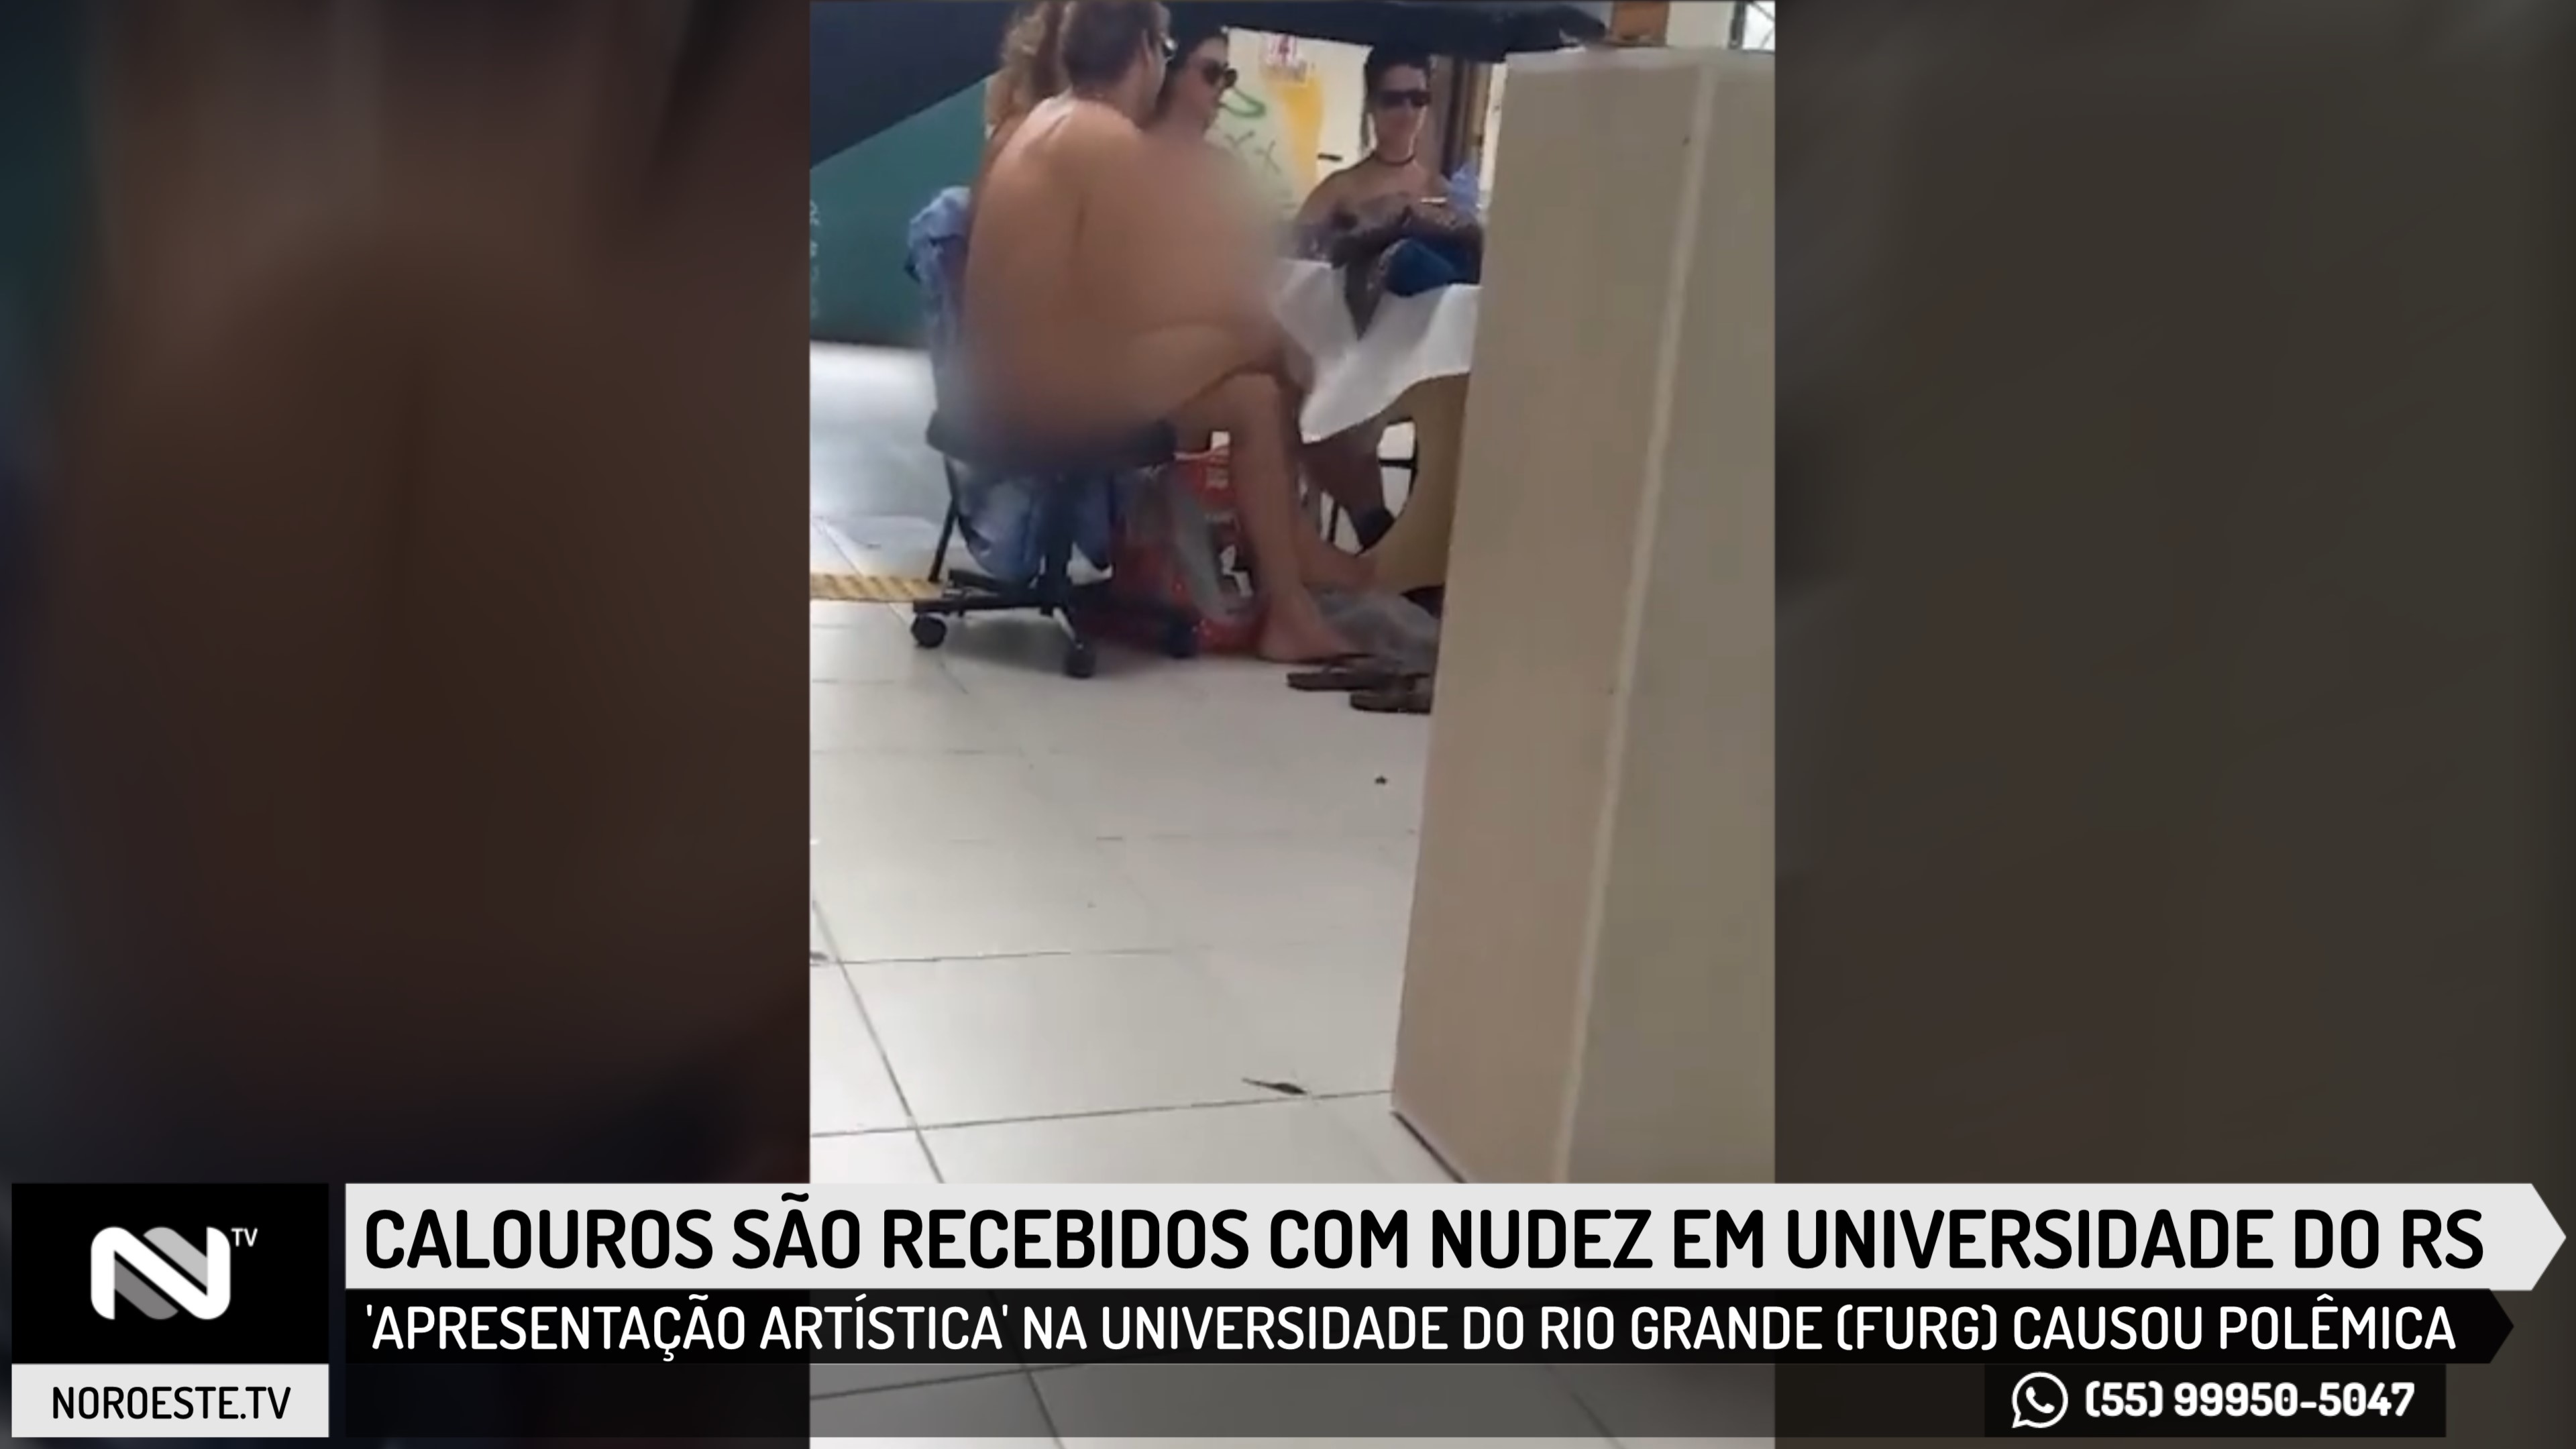 Calouros são recebidos com nudez em universidade do RS